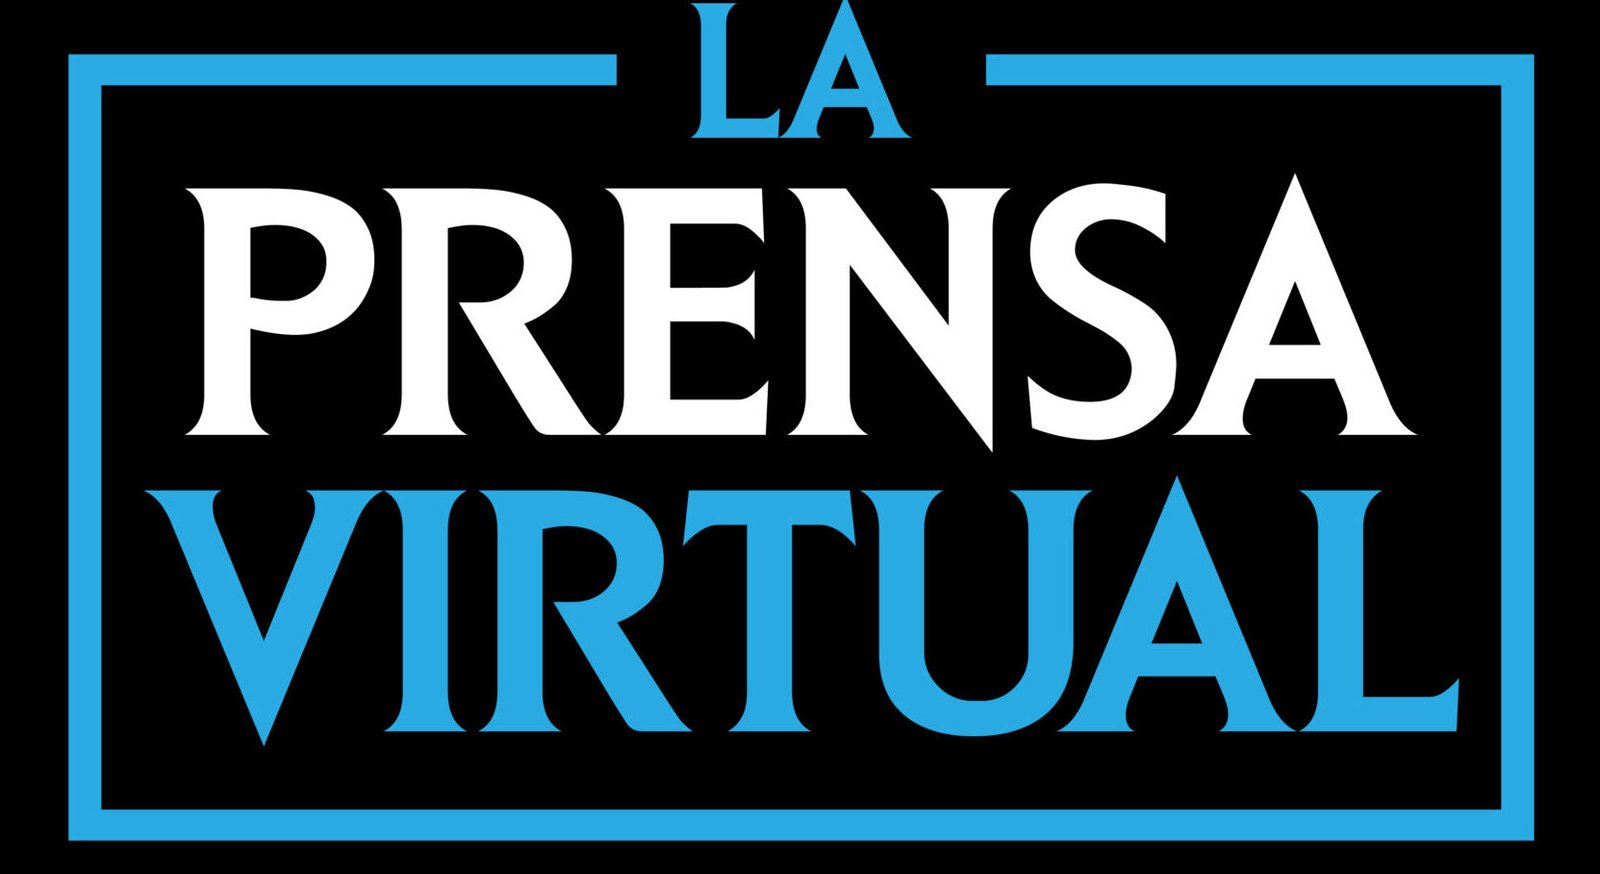 La Prensa Virtual